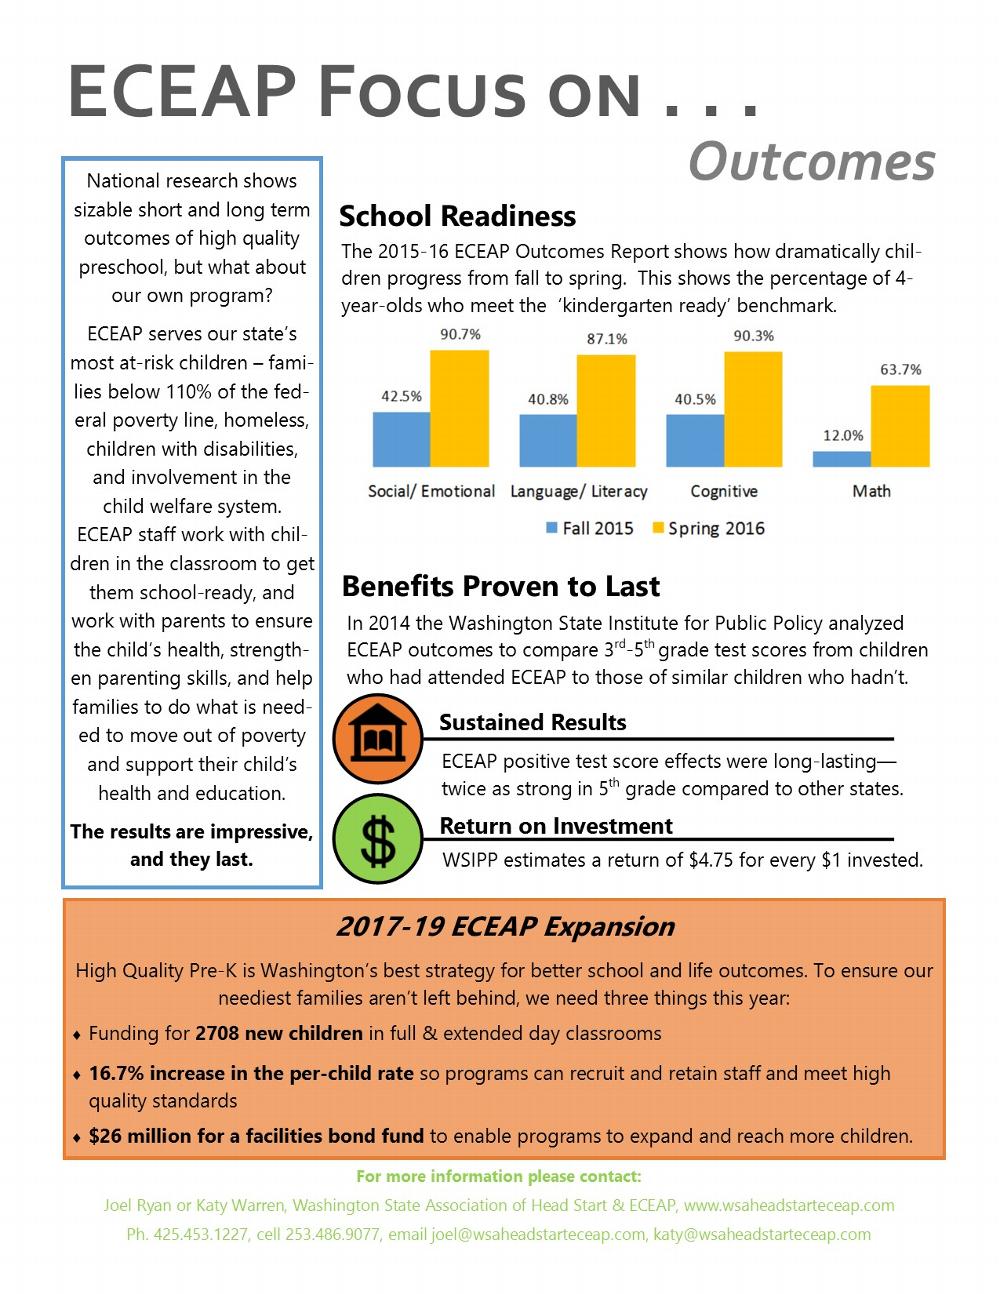 ECEAP Fact Sheet - Outcomes